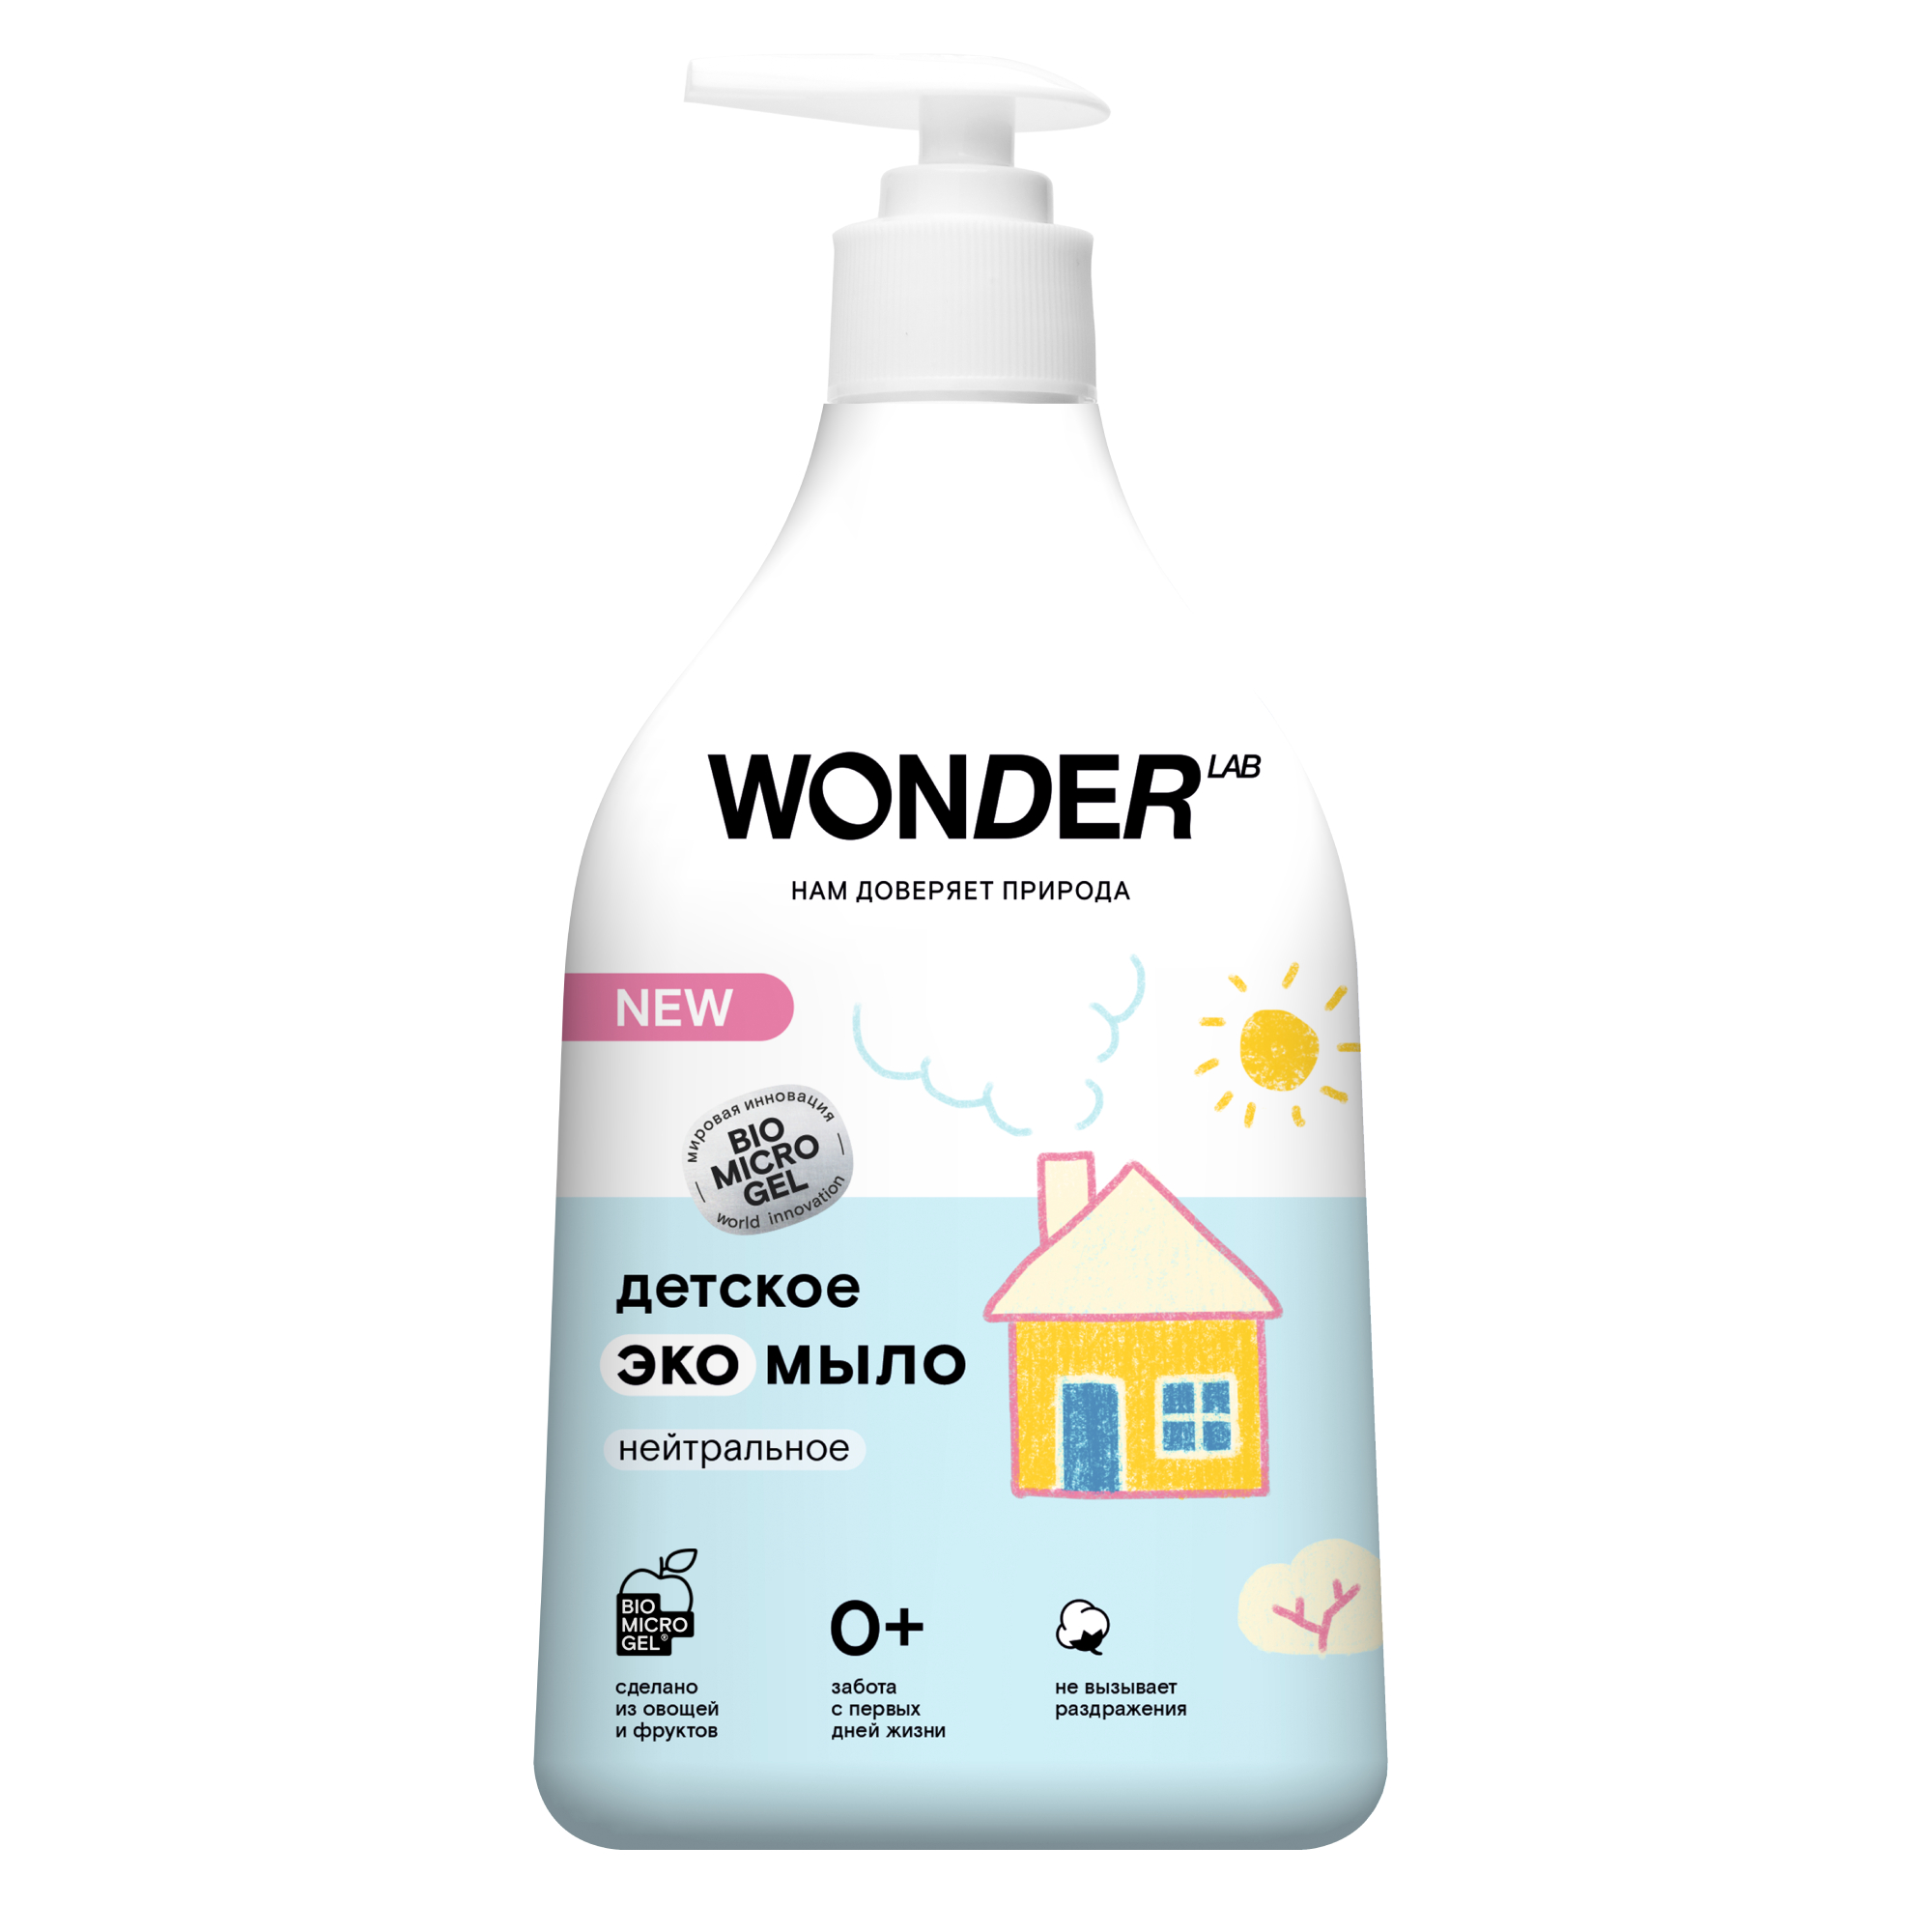 Детское жидкое мыло WONDER LAB, экологичное, без запаха, 540 мл средство для мытья пола wonder lab ирис и голубика экологичное концентрированное 1100 мл